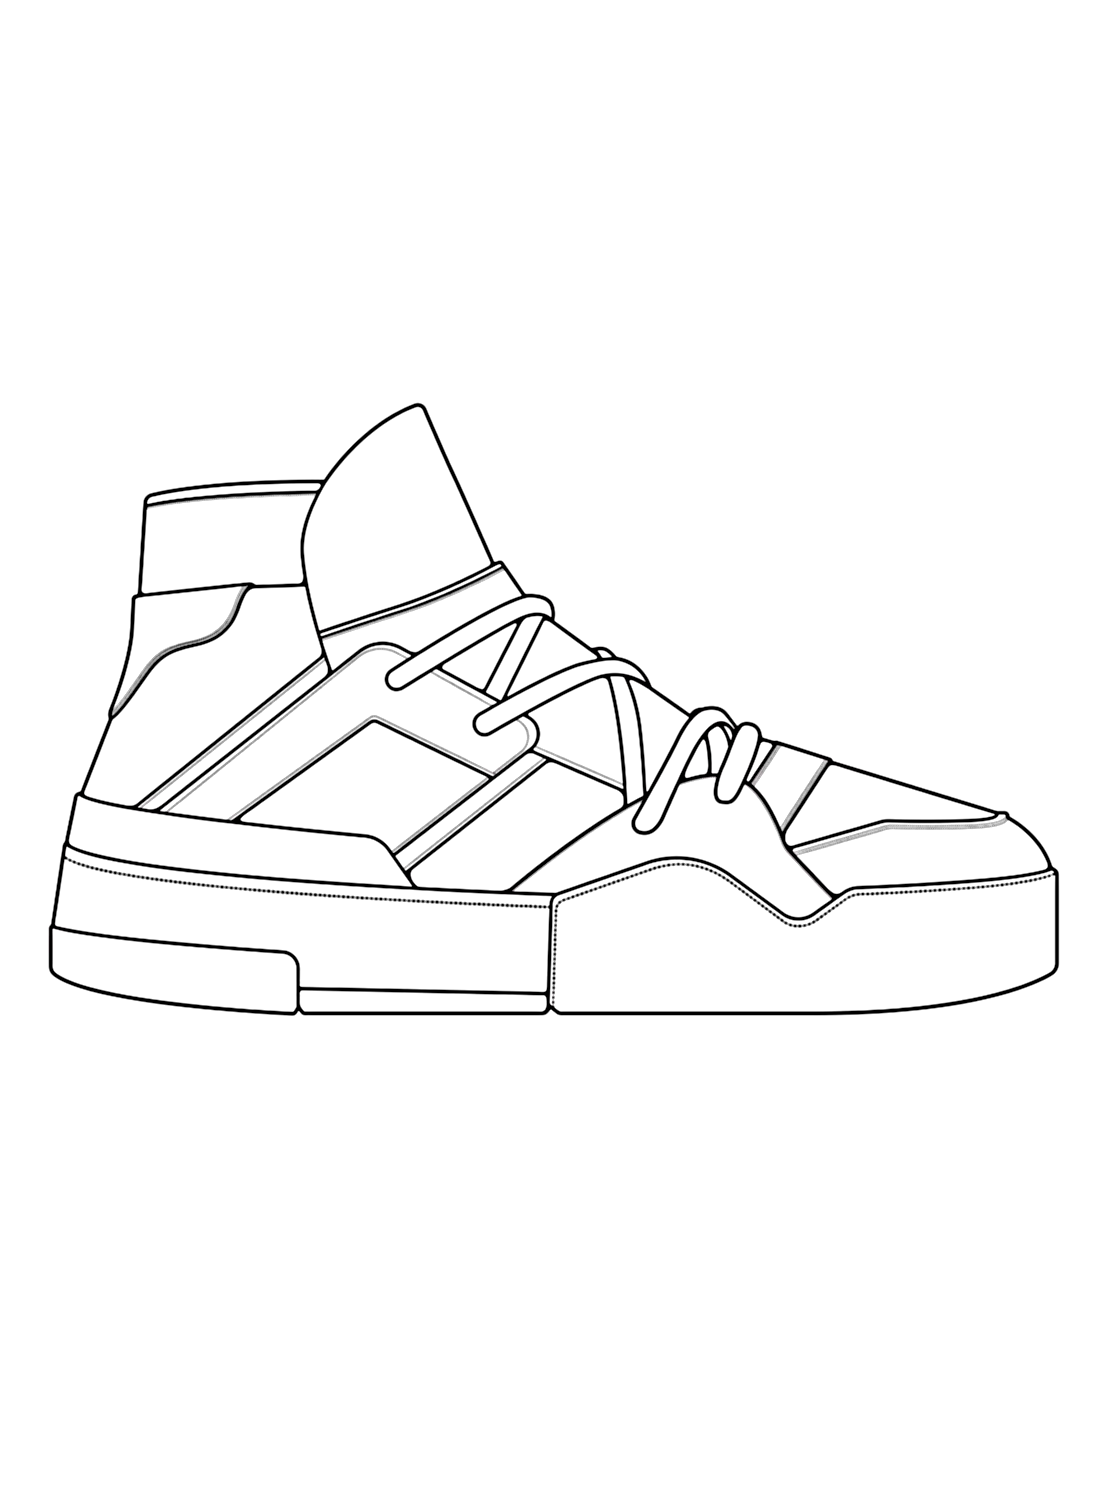 Imagen para colorear de zapatillas de Shoe